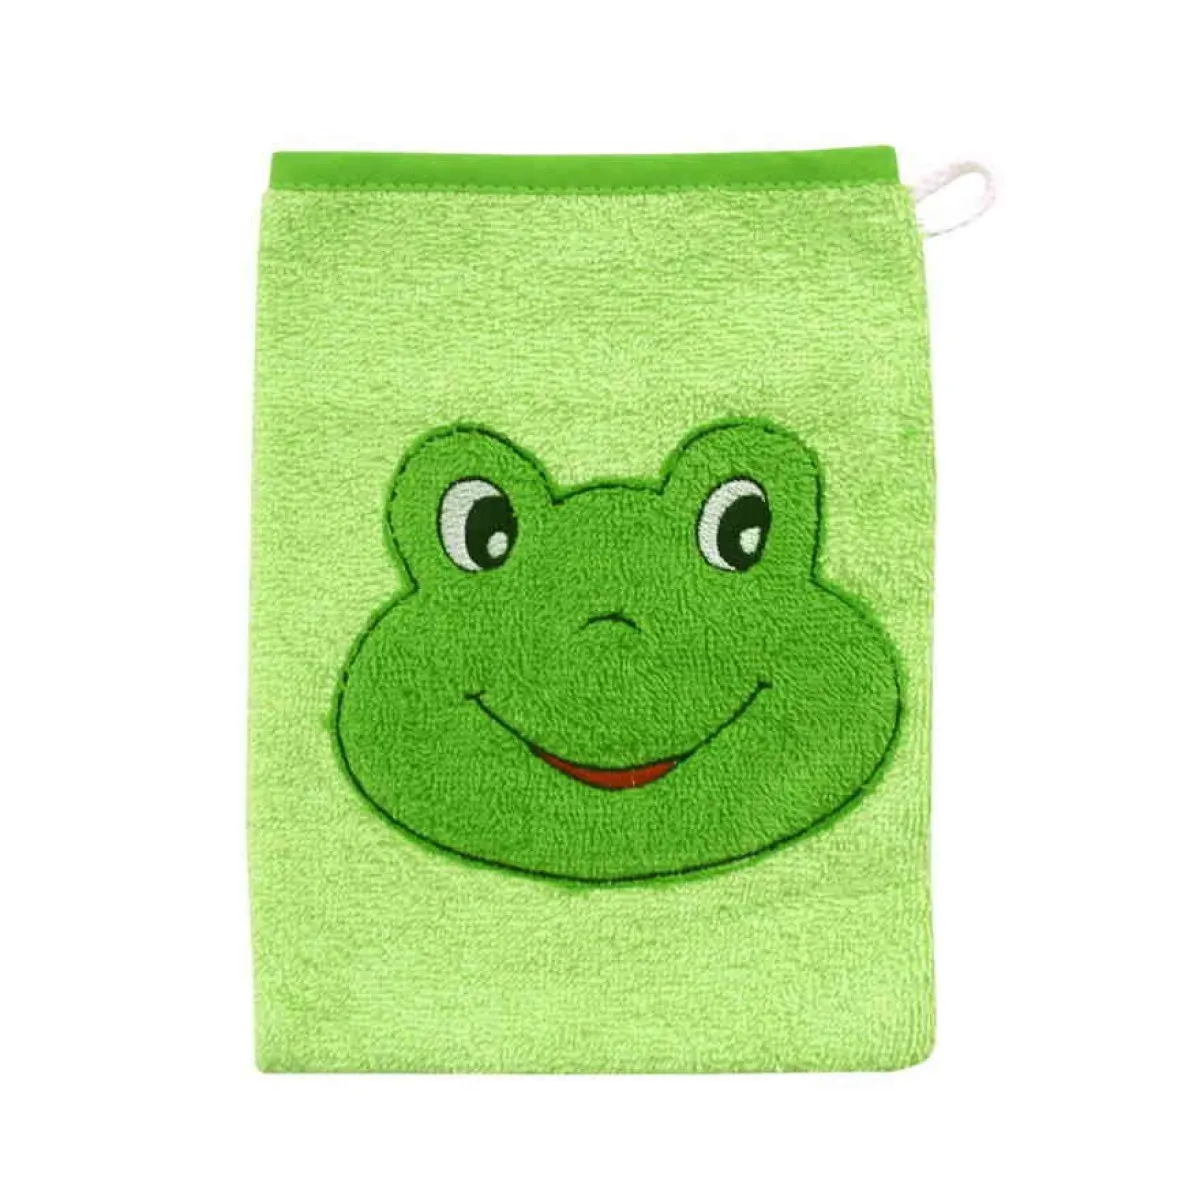 Gant de toilette eponge grenouille vert